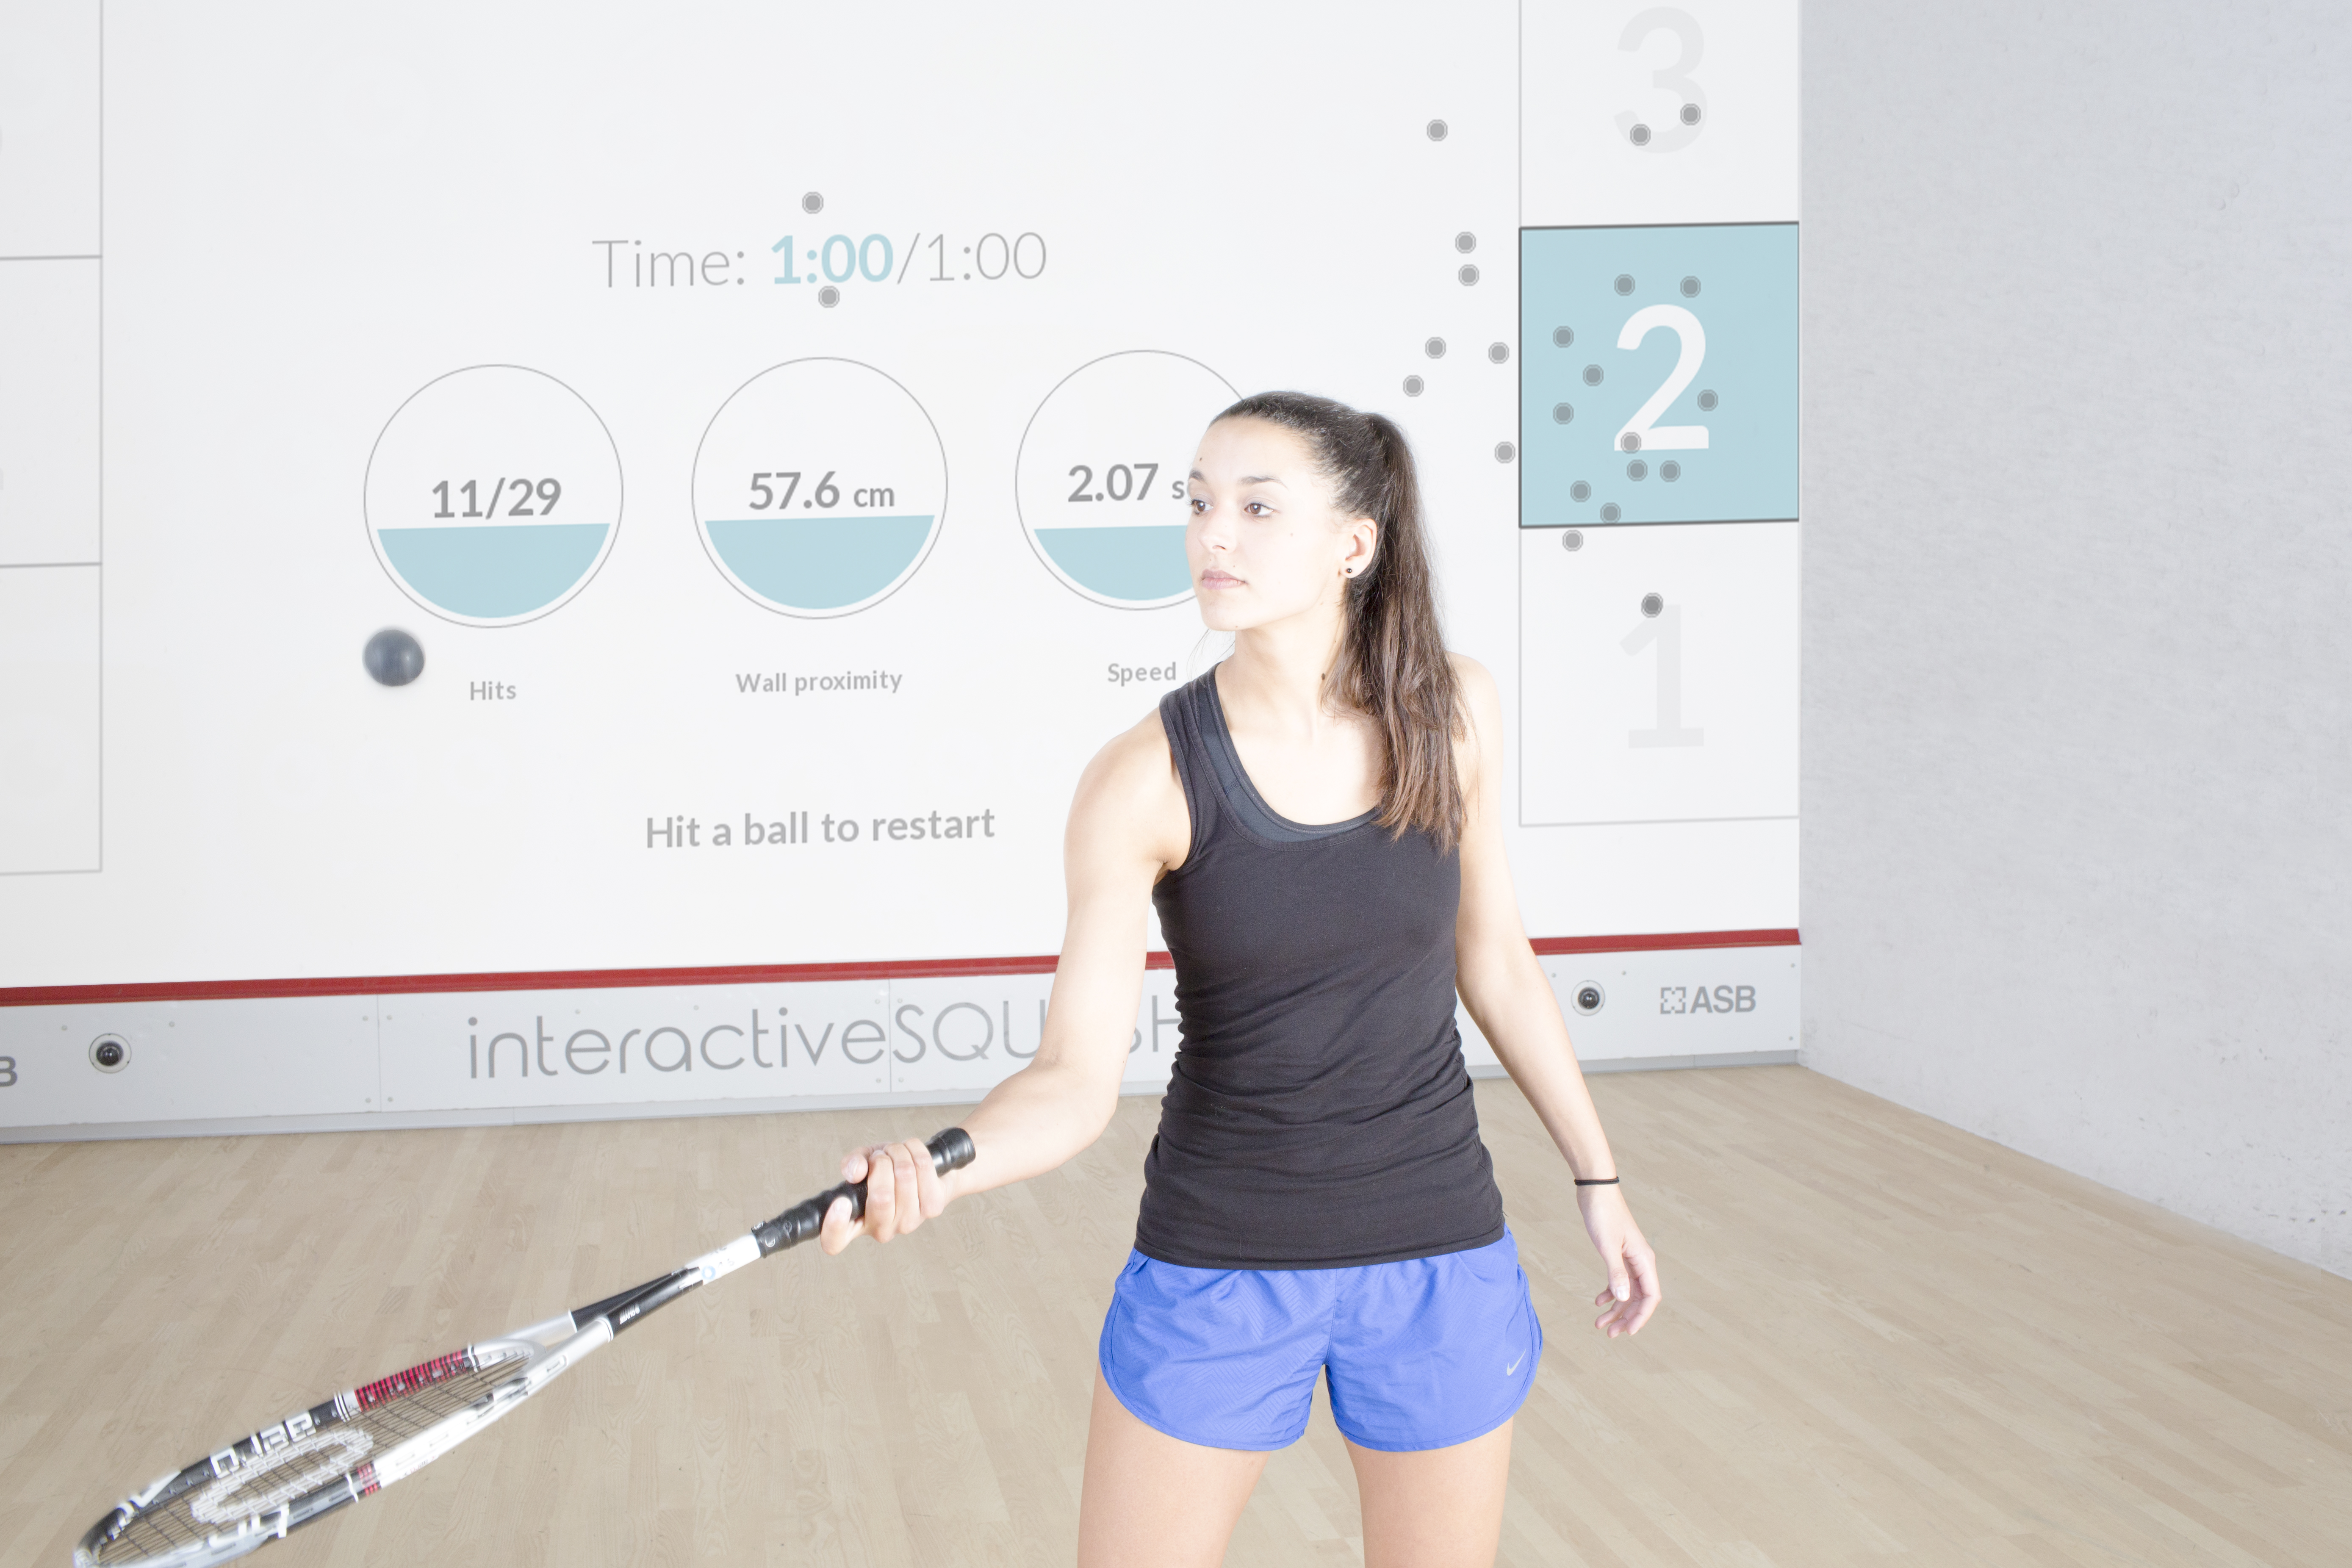 Squash training applications